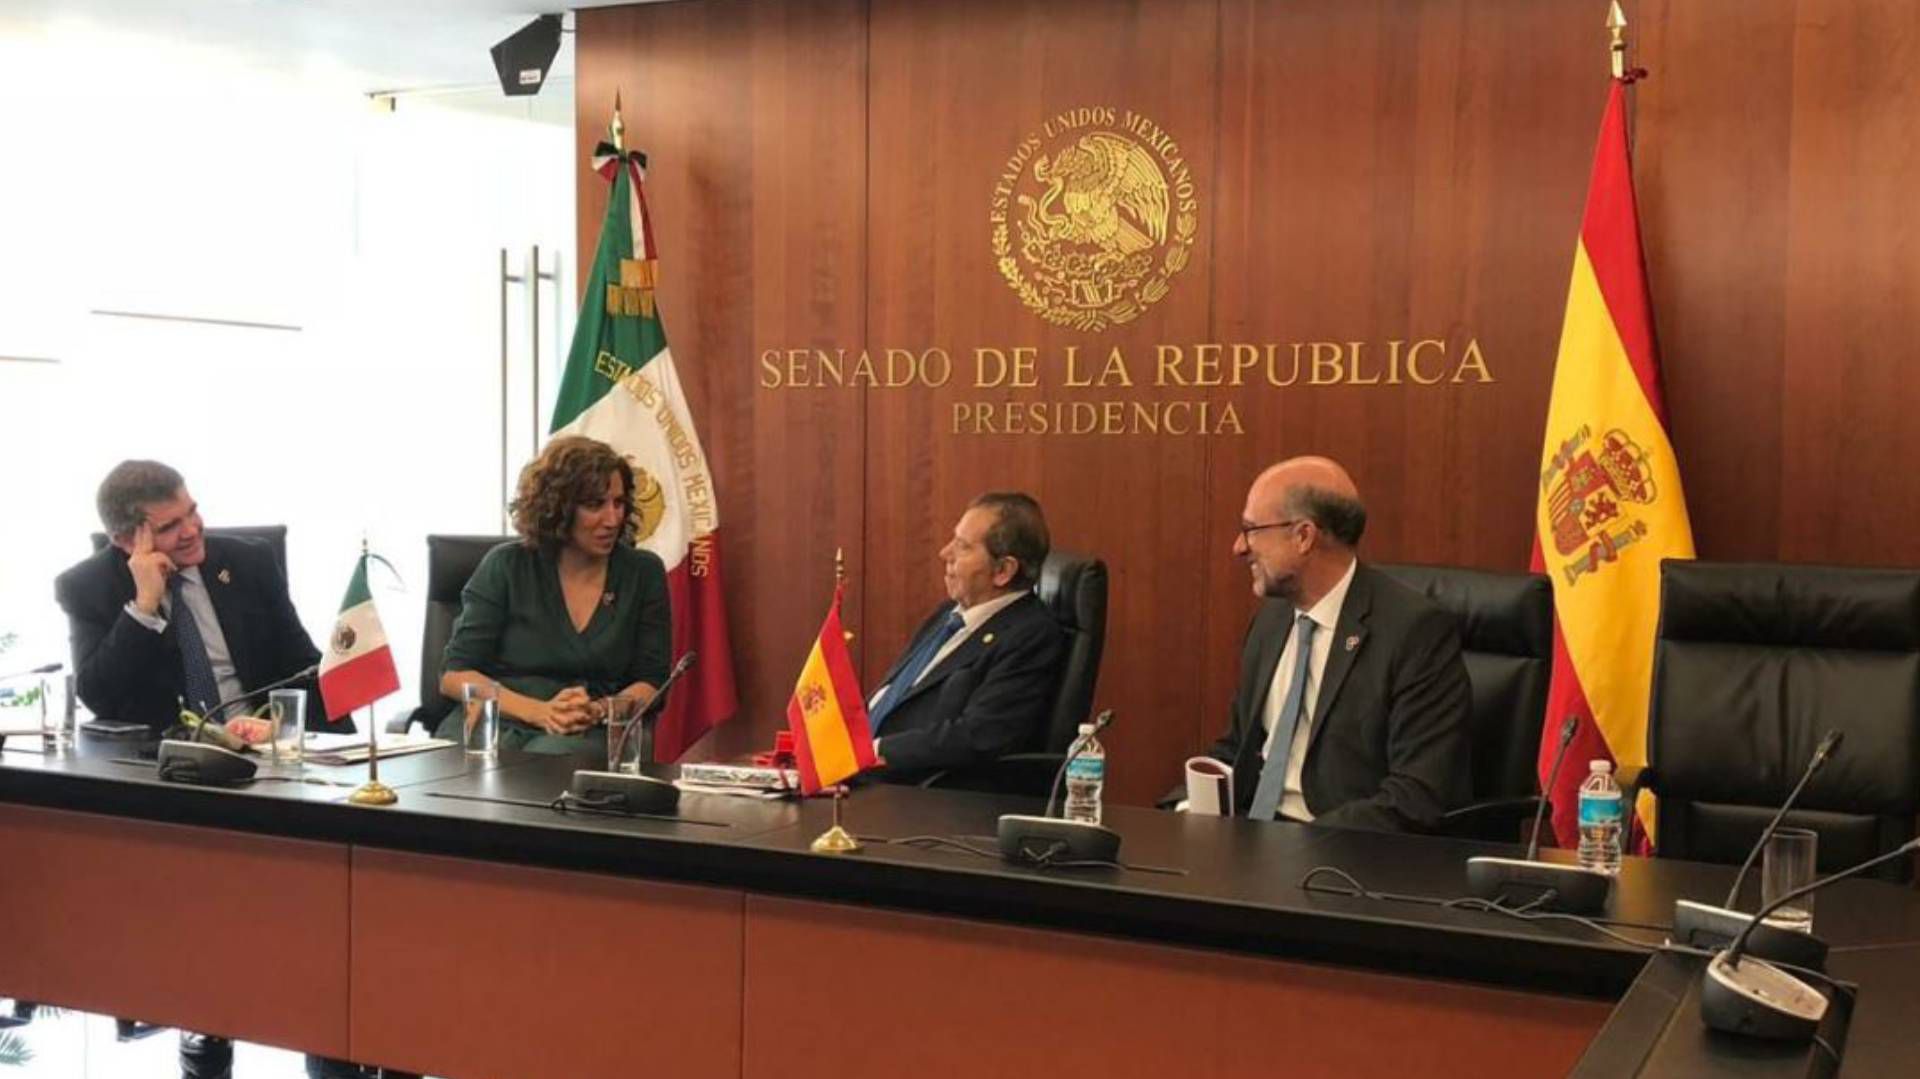 Es la primera visita oficial de un representante del Gobierno español en México después de la controversia (Foto: Twitter)